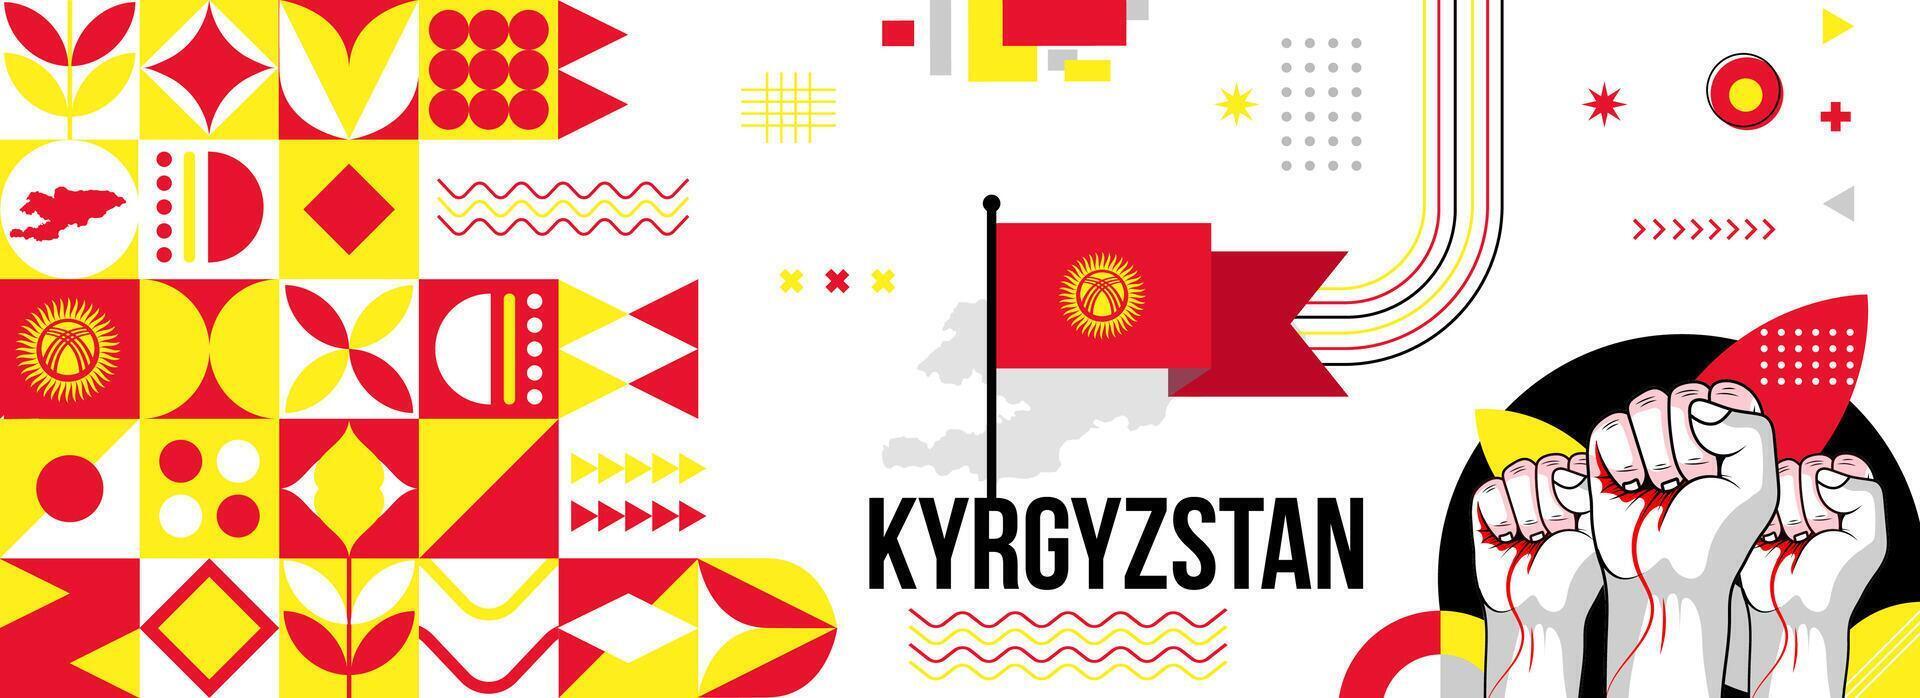 kyrgyzstan nationell eller oberoende dag baner för Land firande. flagga och Karta av kyrgyzstan med Uppfostrad nävar. modern retro design med typorgaphy abstrakt geometrisk ikoner. vektor illustration